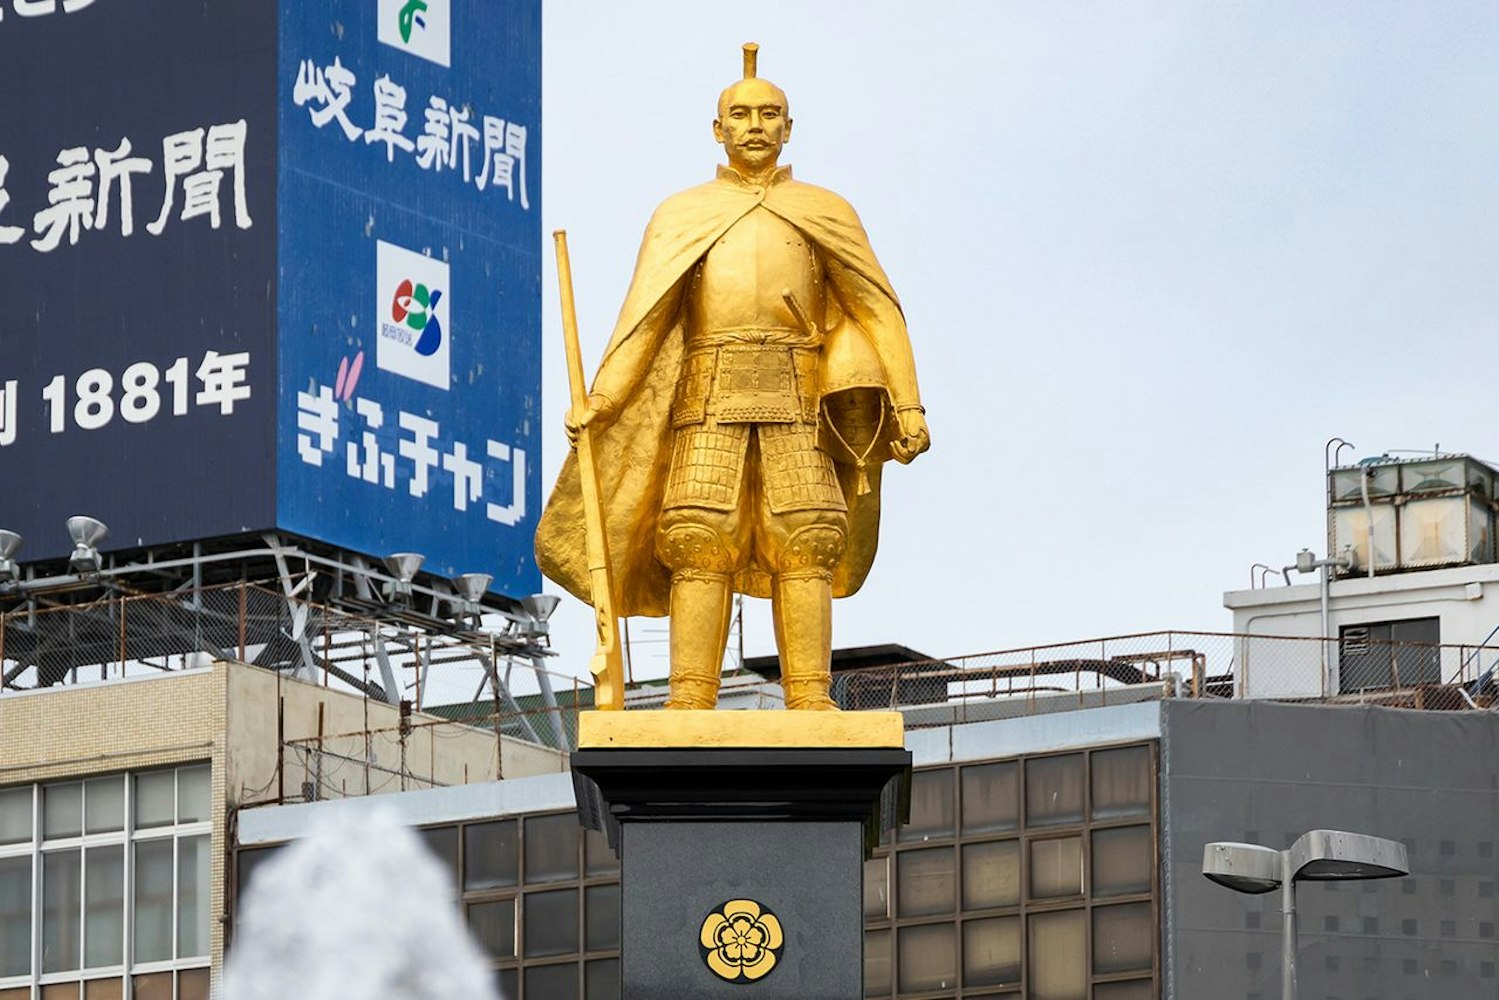 Gifu Oda Nobunaga's Statue